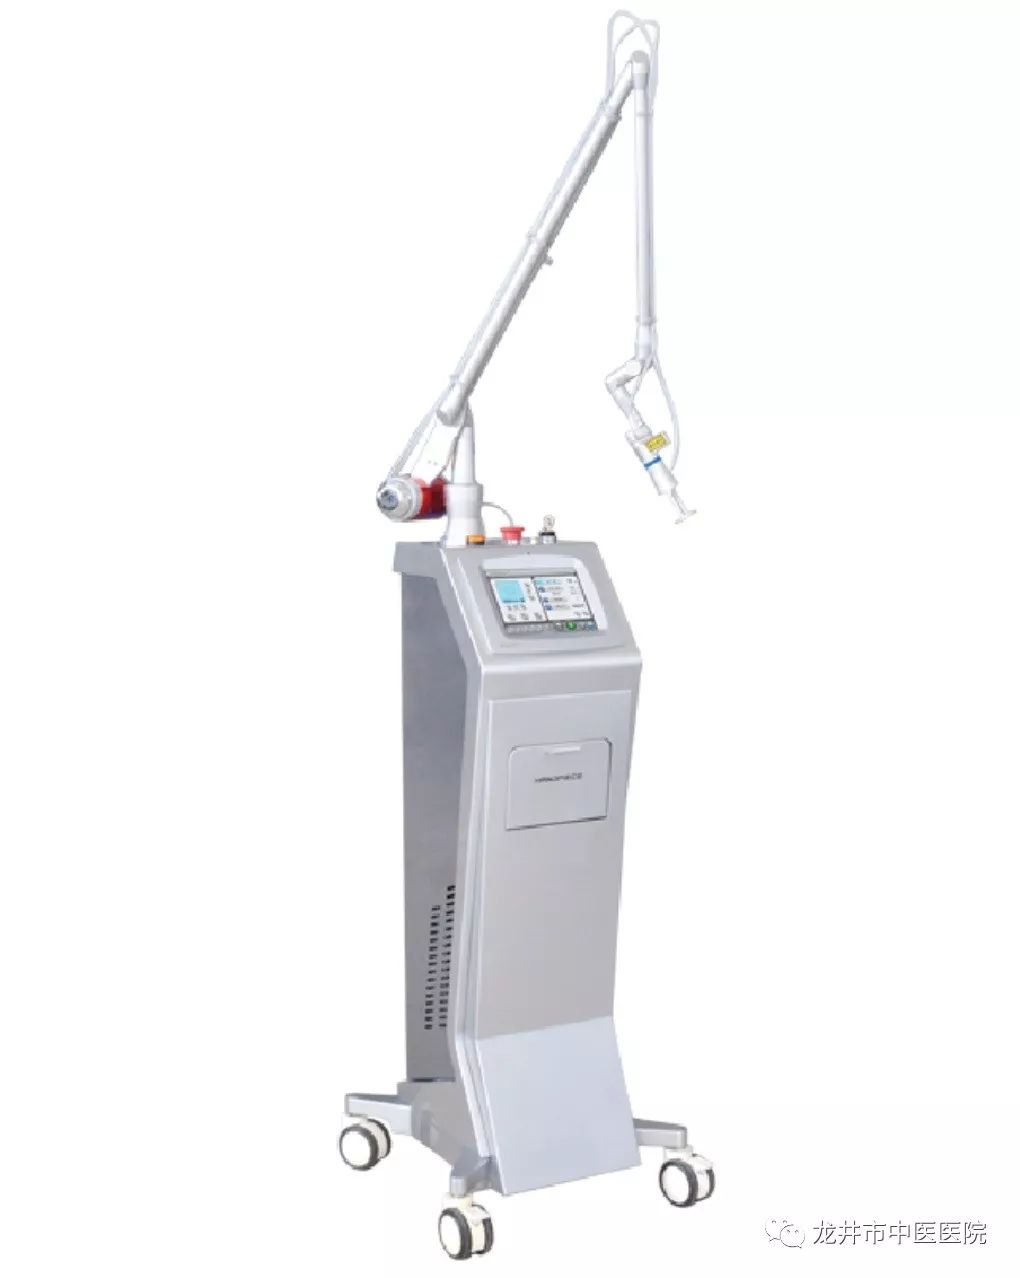 kl型二氧化碳激光治疗机(点阵激光换肤系统)